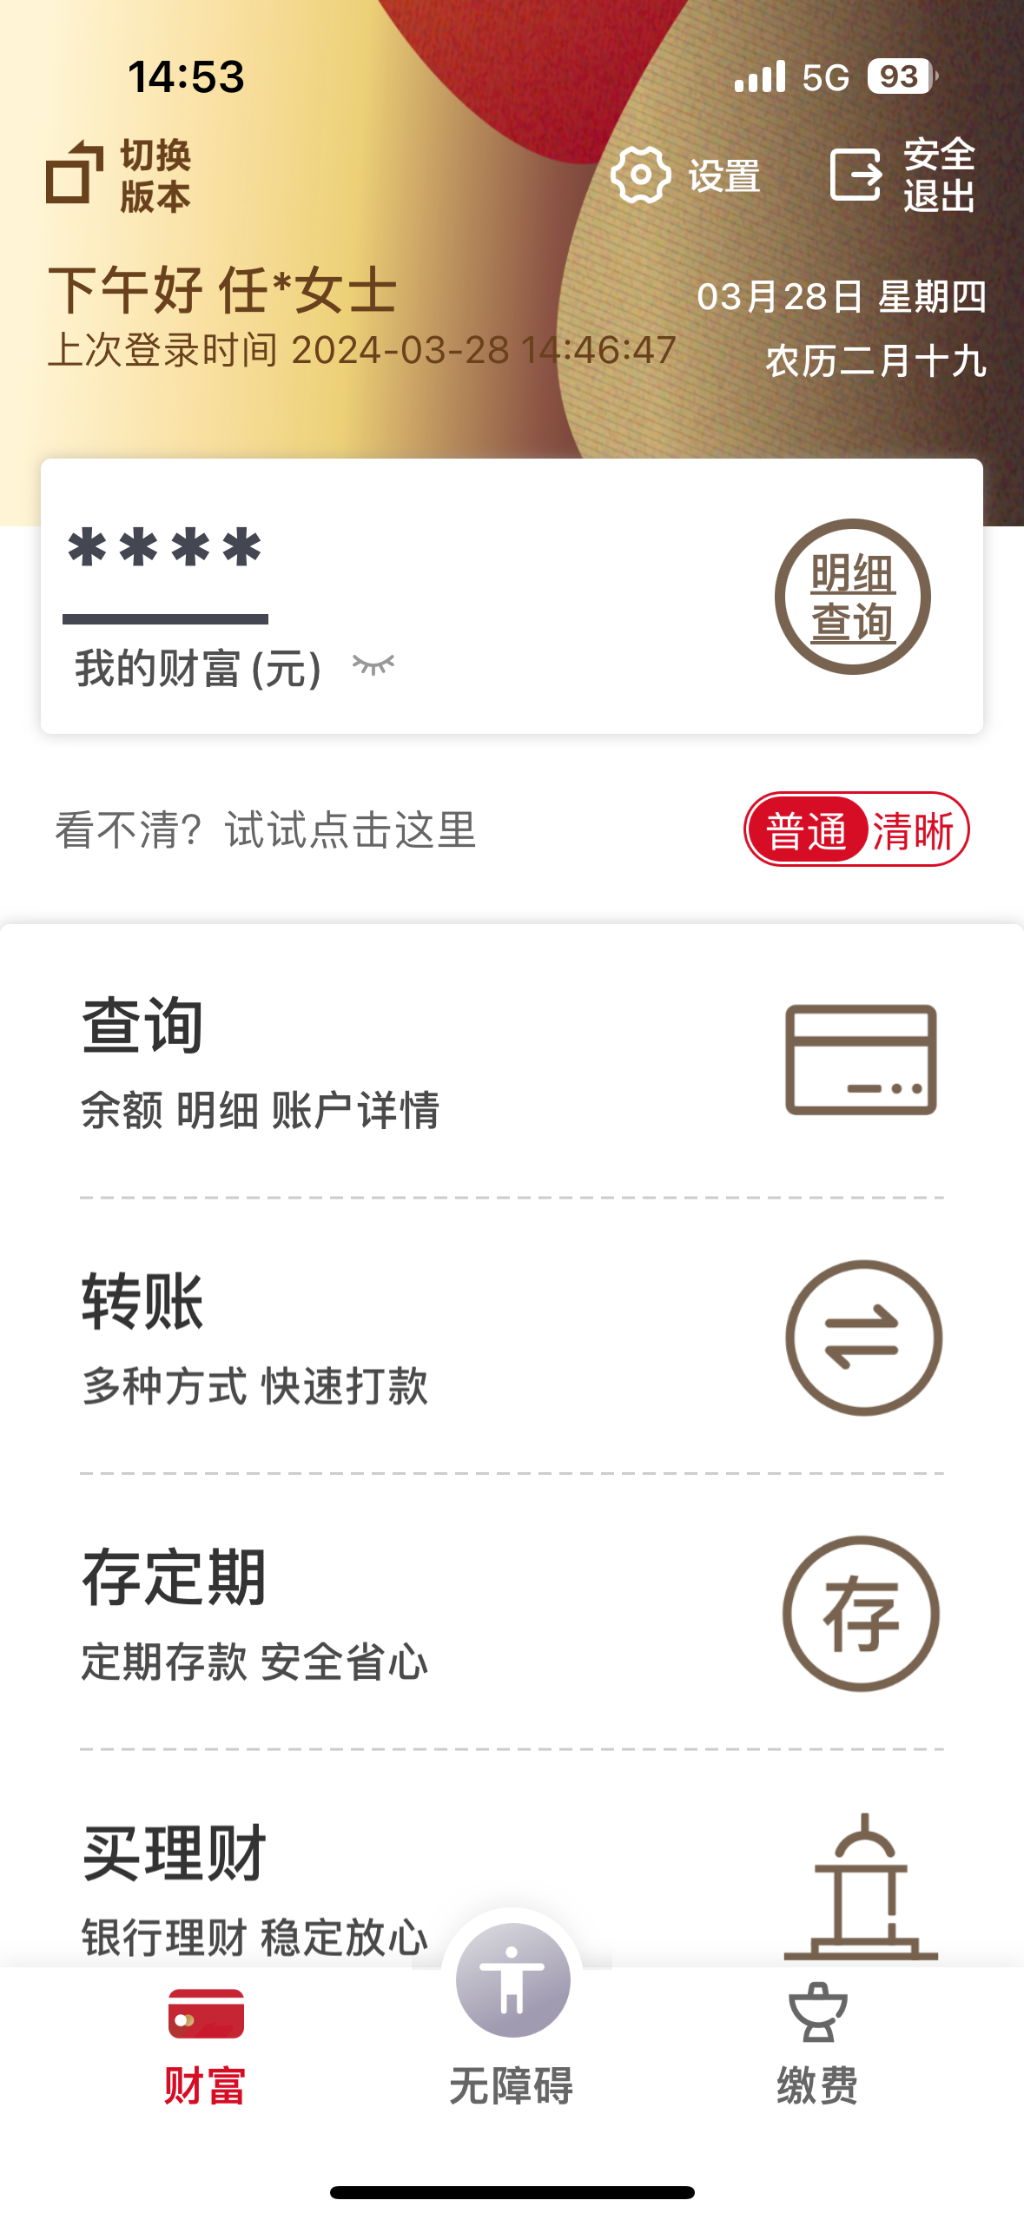 （图2）图为重庆农商行为老年客户定制的“关爱版”手机银行特色界面及功能